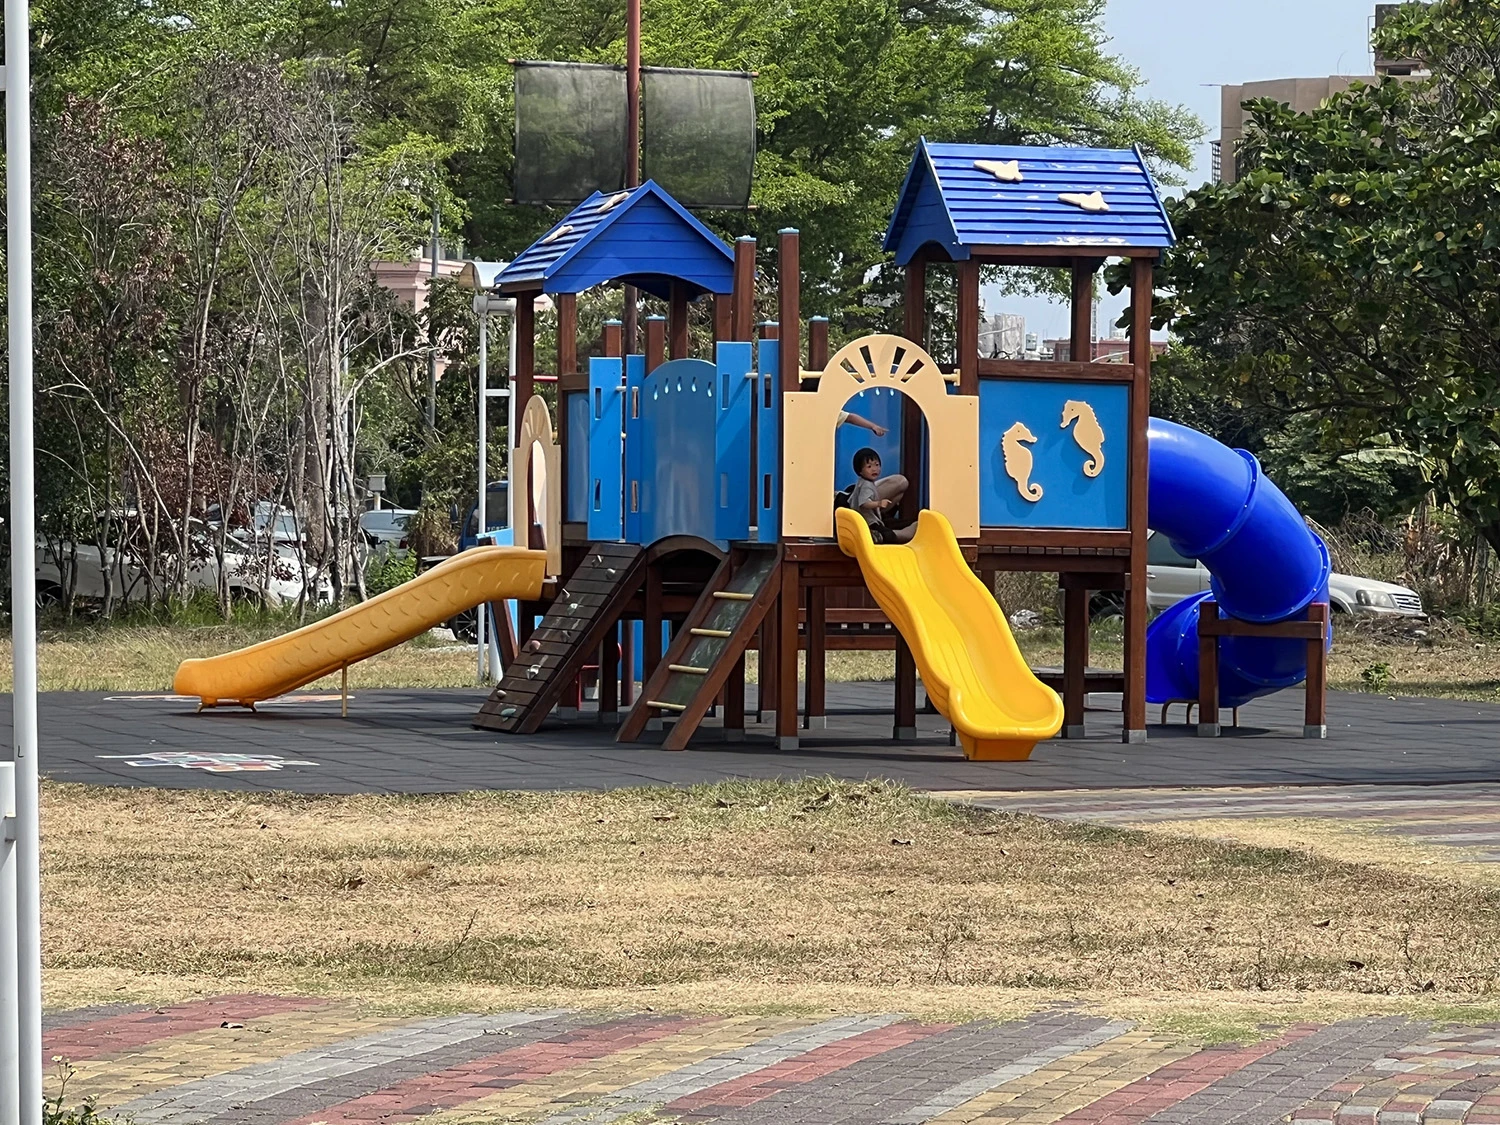 臺東縣美術館兒童公園15日起進行修繕 暫停開放使用